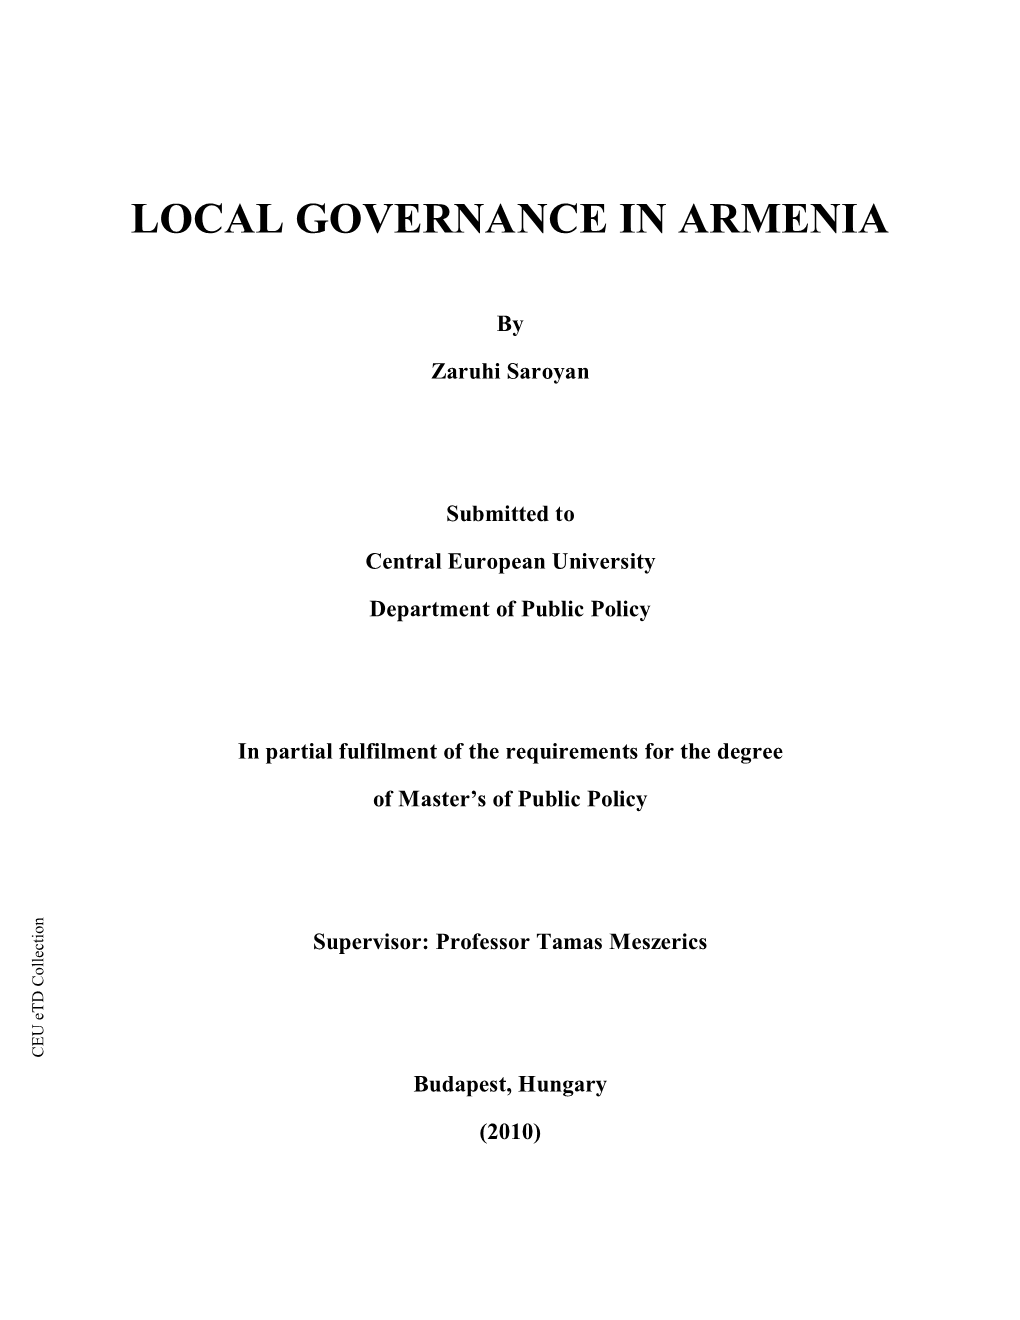 Local Governance in Armenia